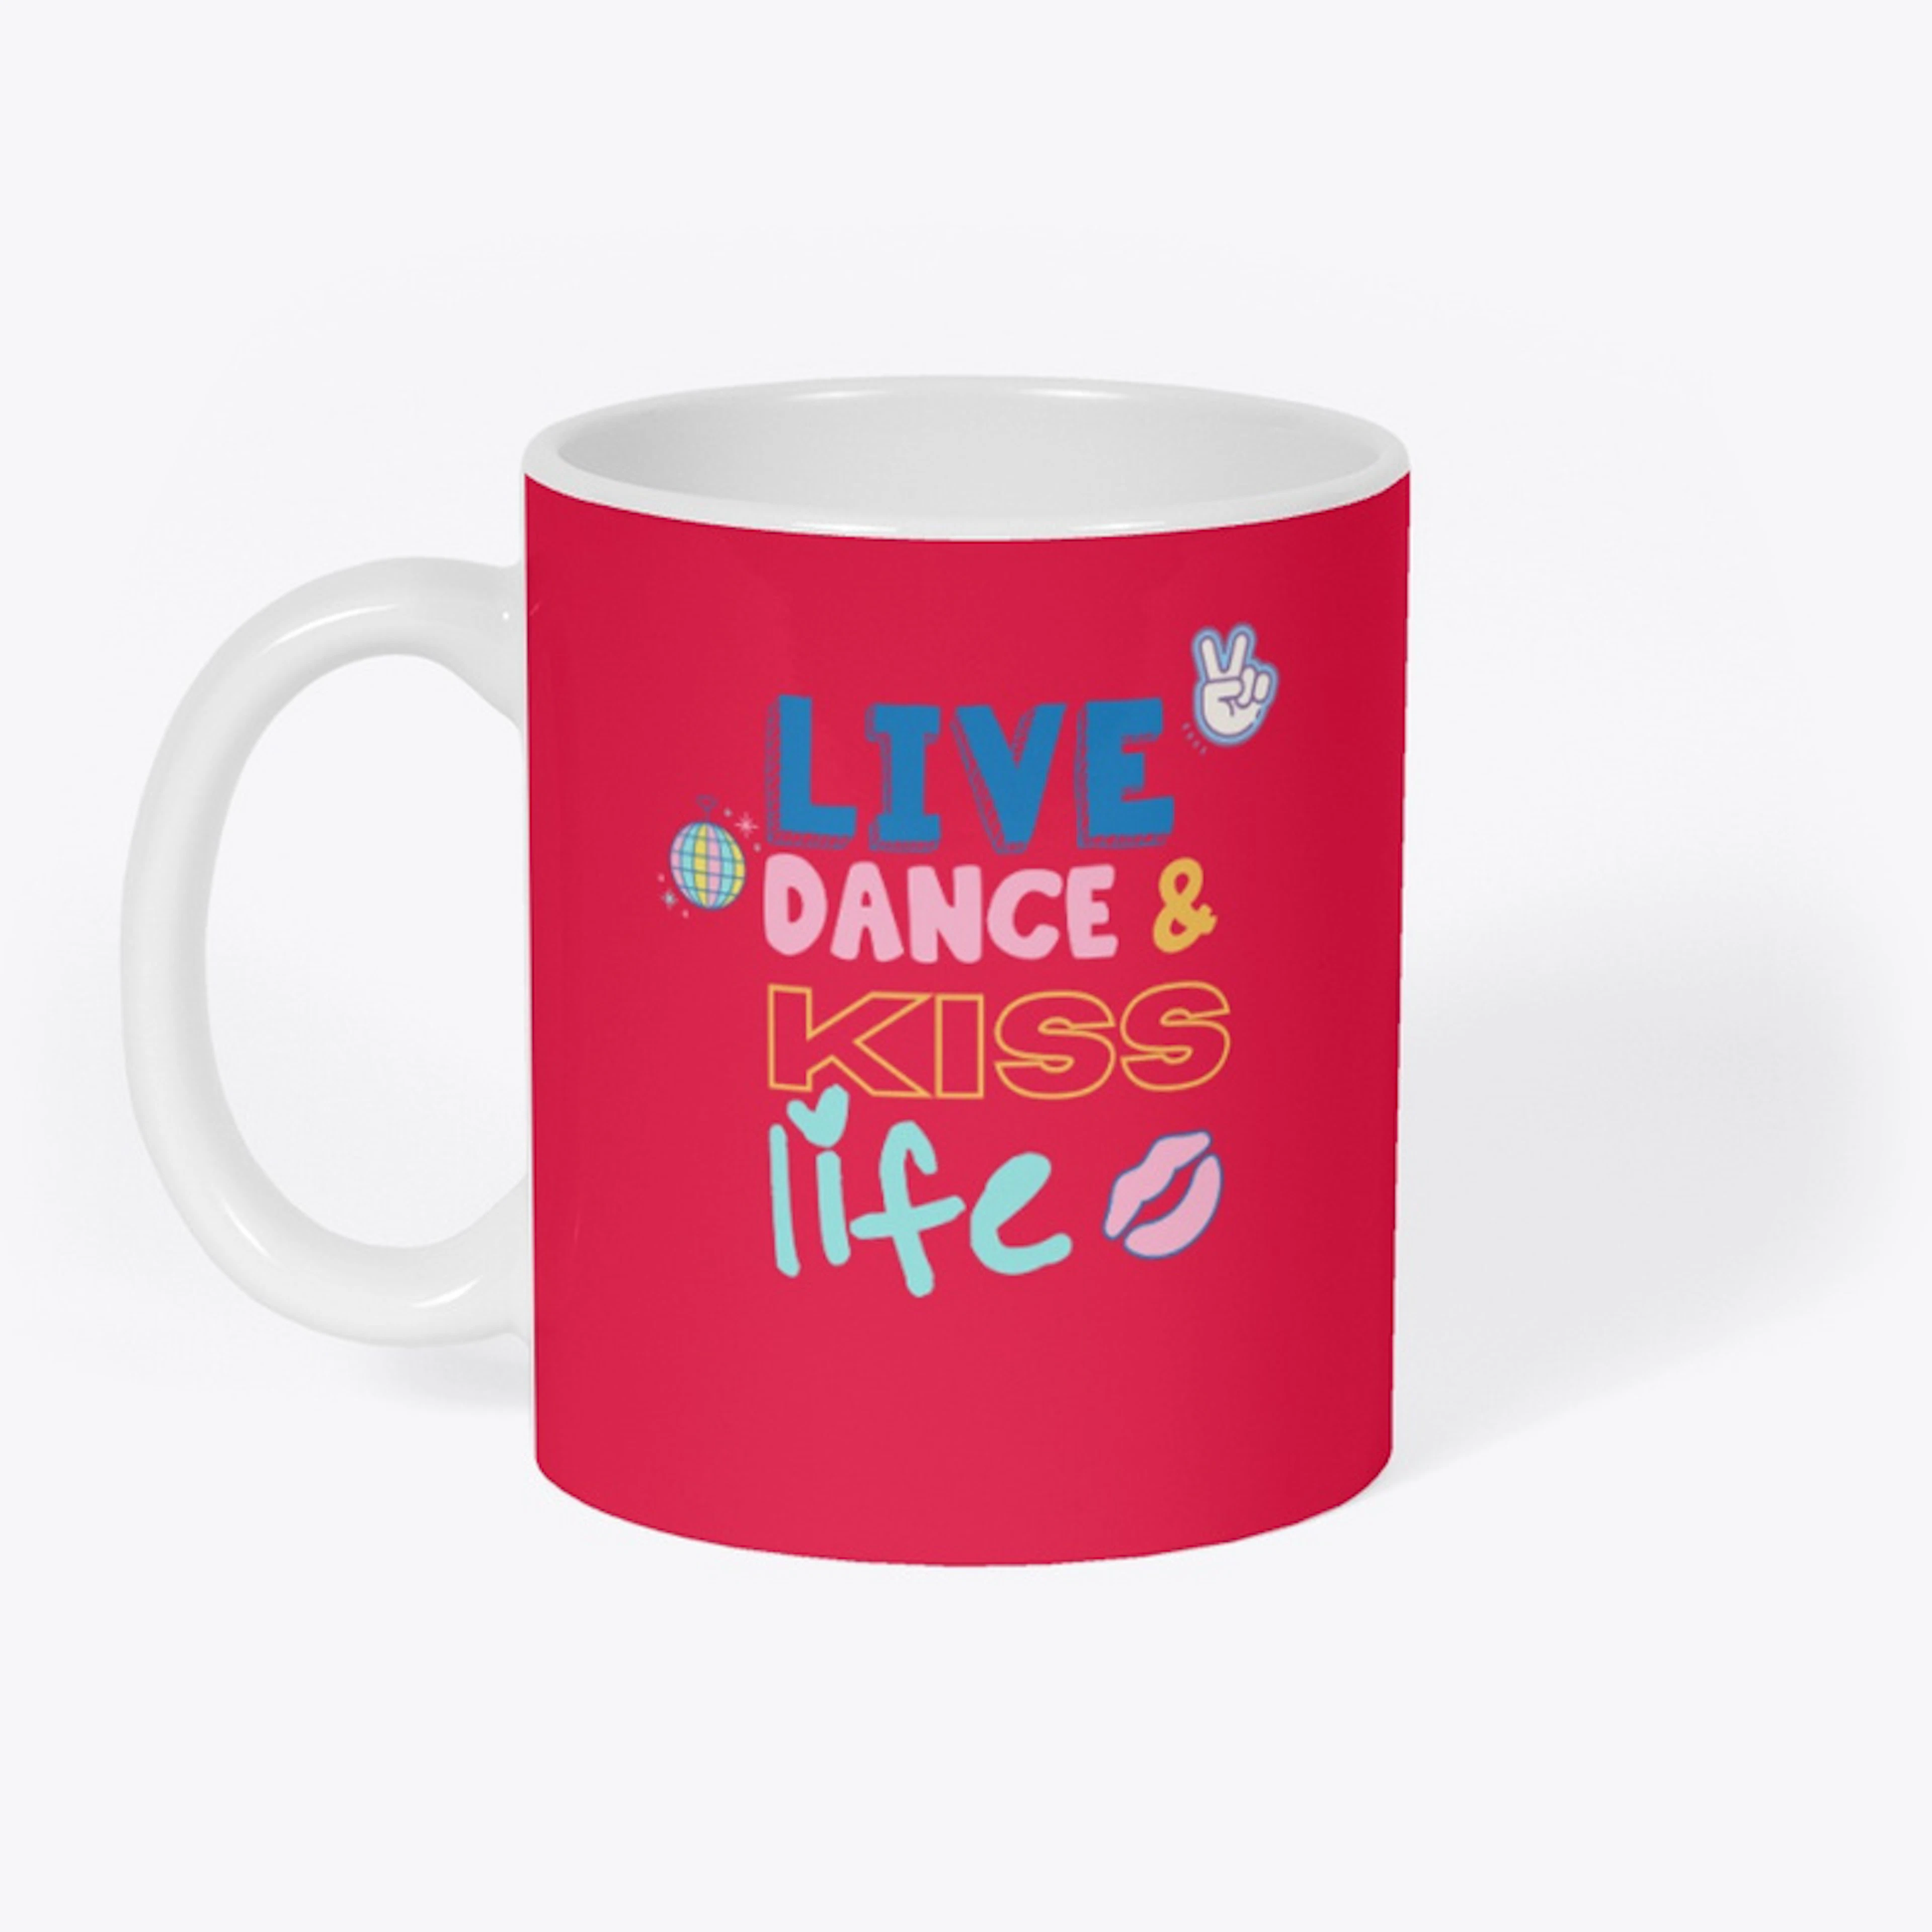 Live, dance & kiss life